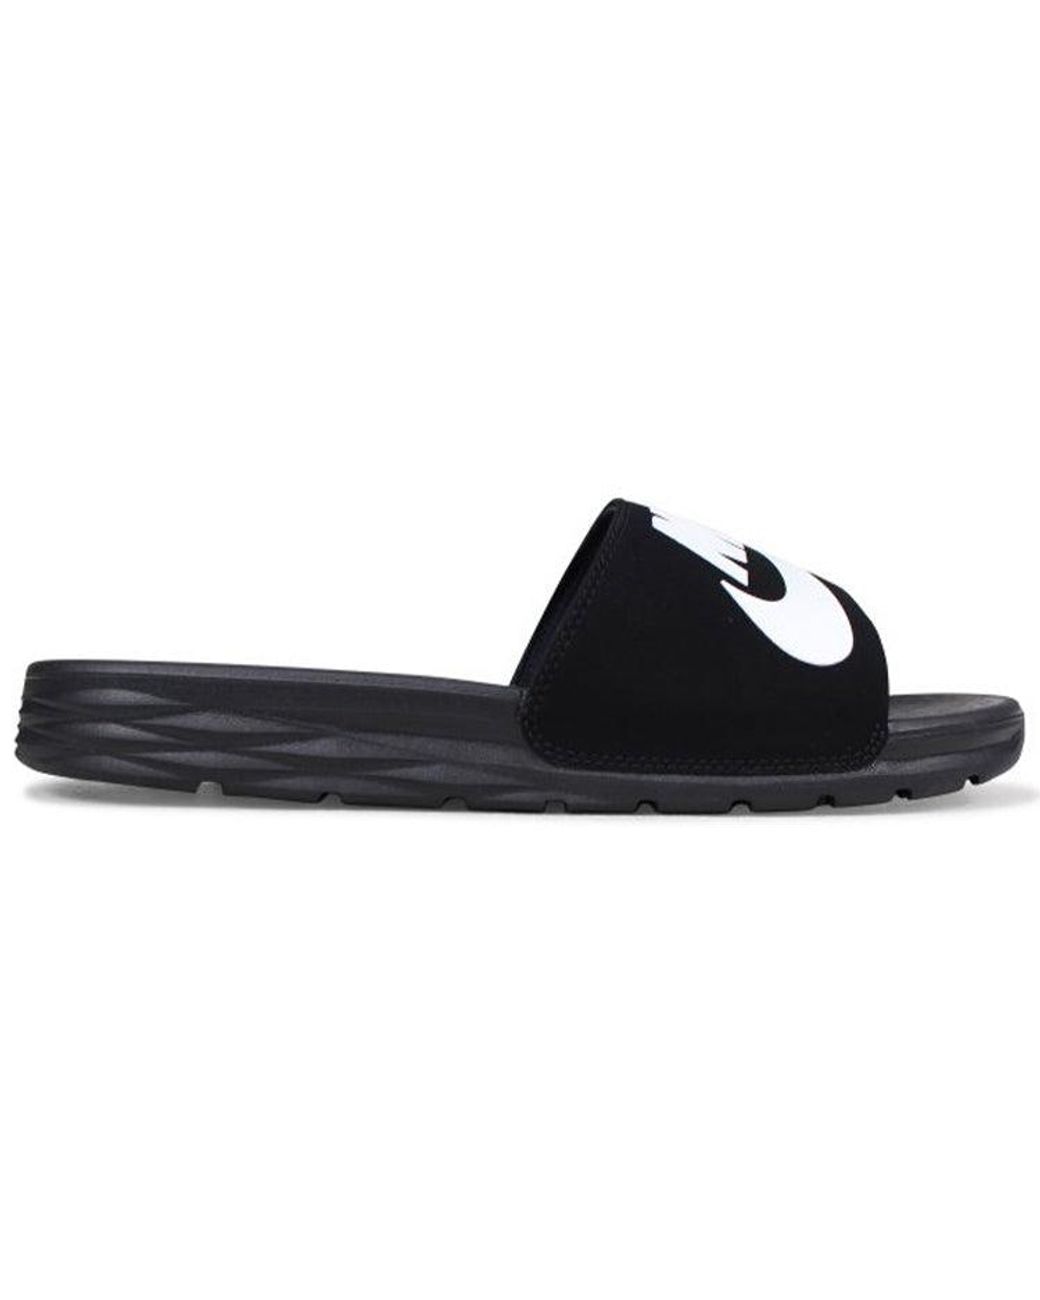 FALSK Spild kande Nike Sandals Sports Slippers 'black White' for Men | Lyst